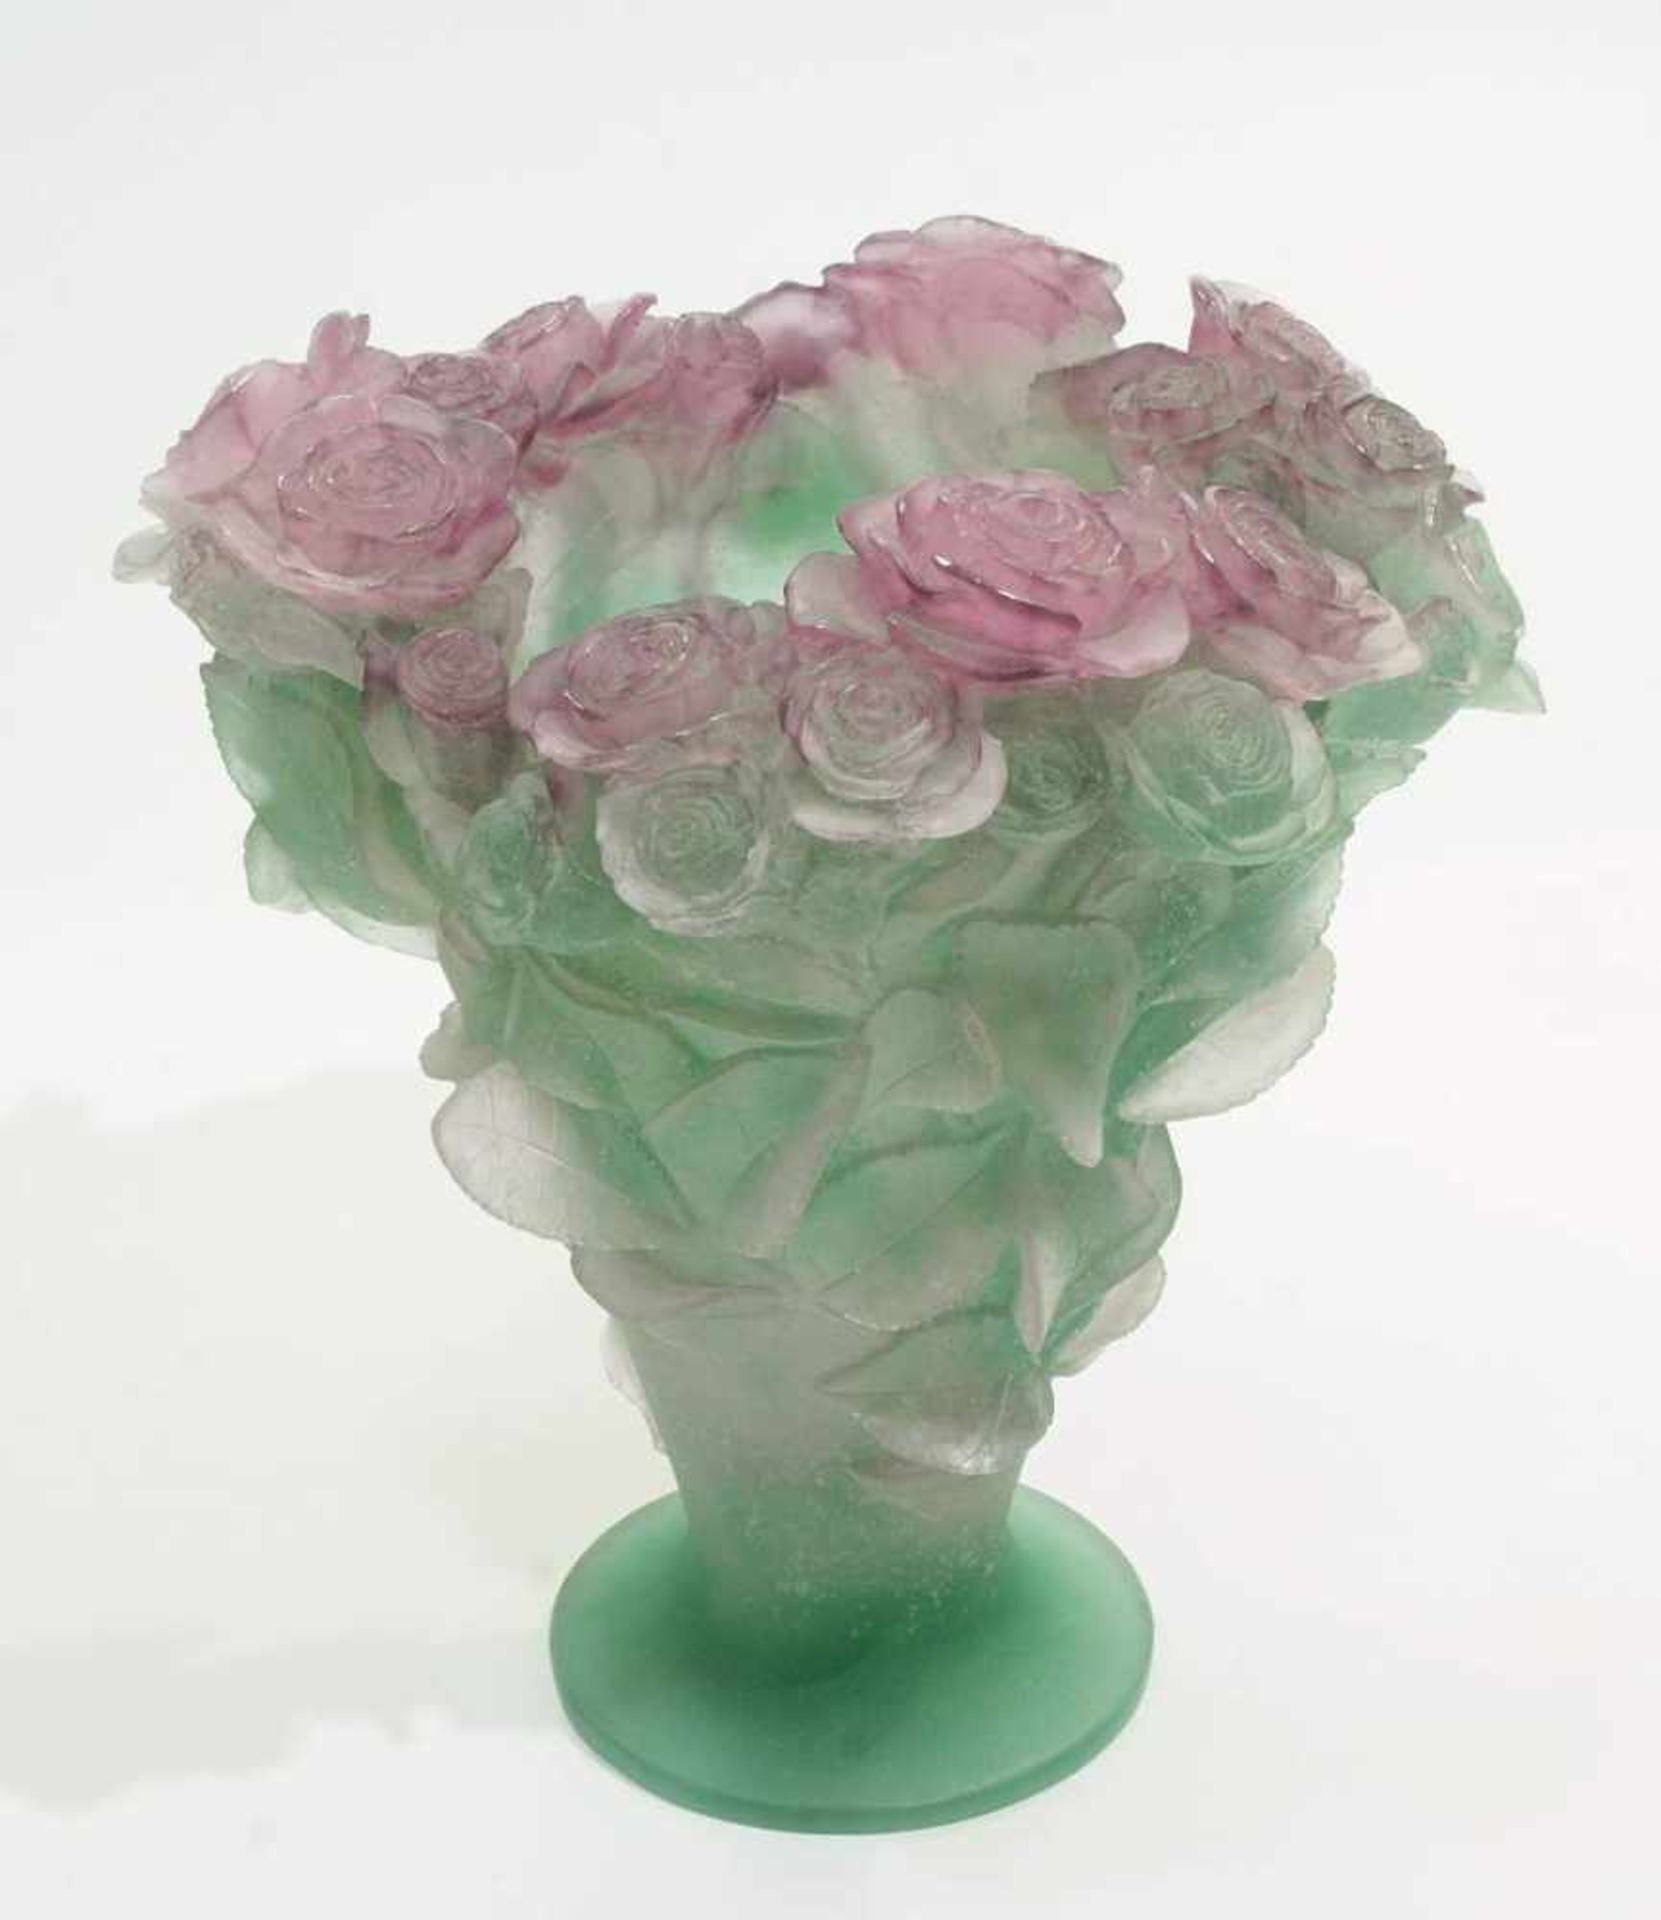 DAUM Pate-de-Verre "Roses" Vase. France. DAUM Pate-de-Verre "Roses" Vase. France. 20. Jahrhundert. - Image 2 of 6